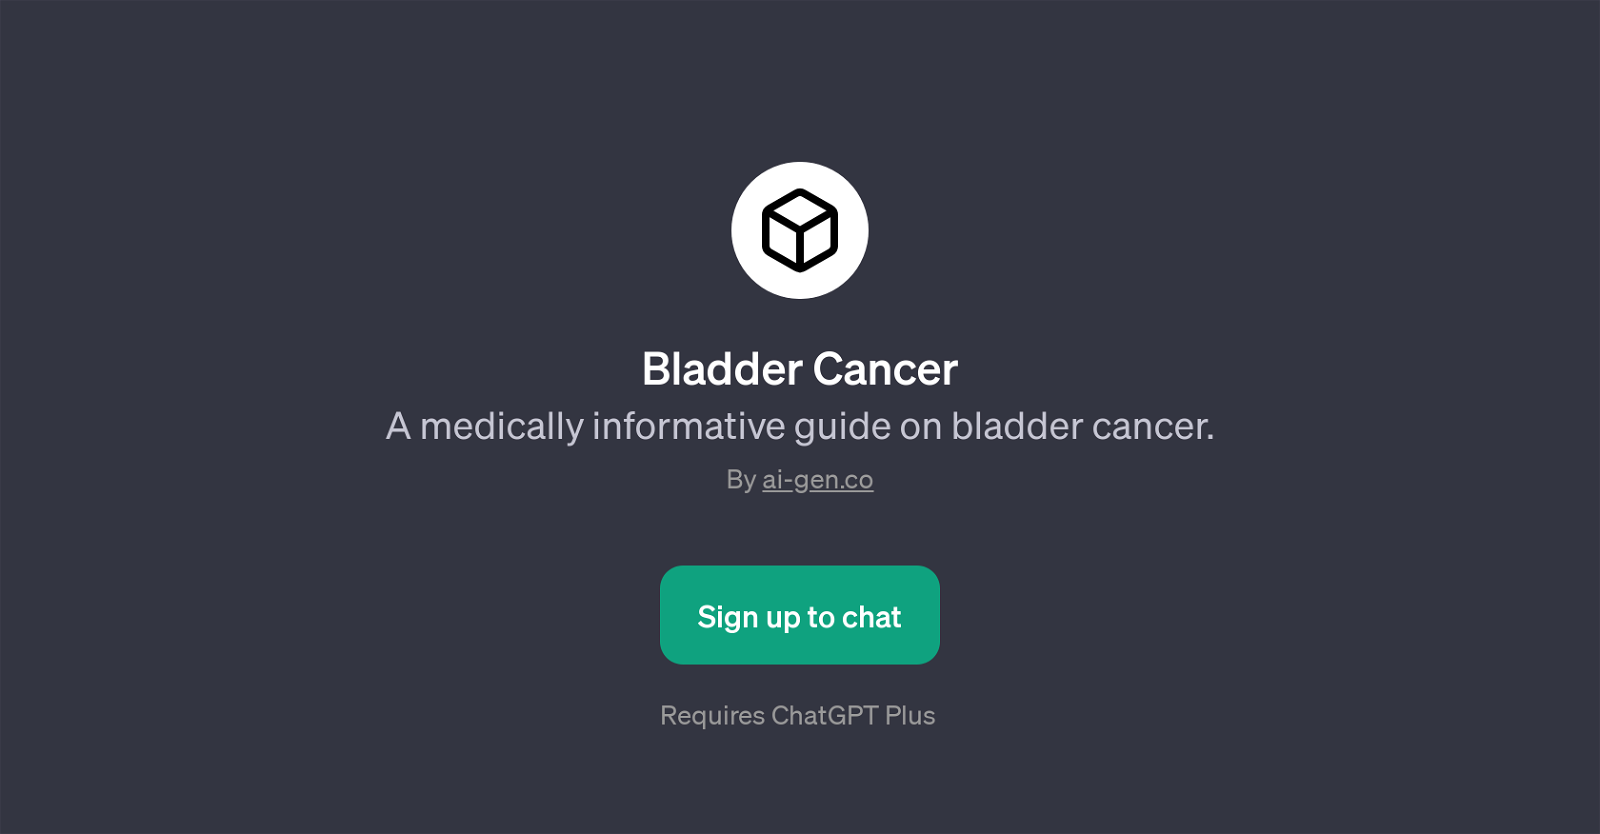 Bladder Cancer website